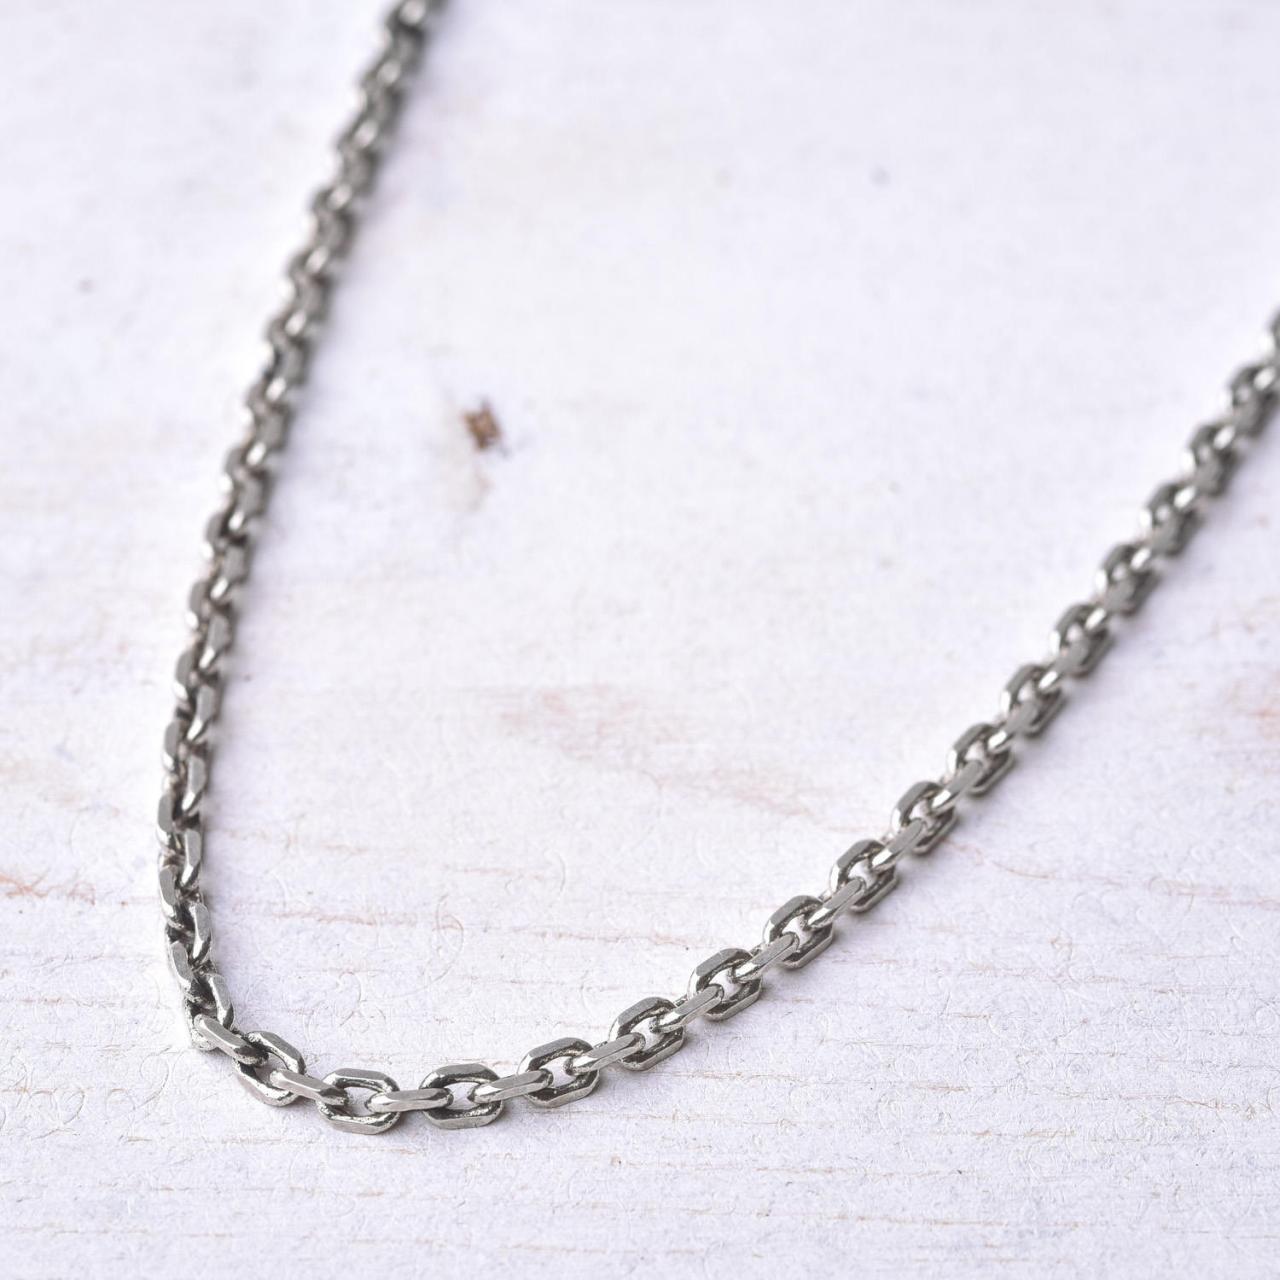 Men's Necklace - Men's Chain Necklace - Men's Silver Necklace - Mens Jewelry - Necklaces For Men - Jewelry For Men -